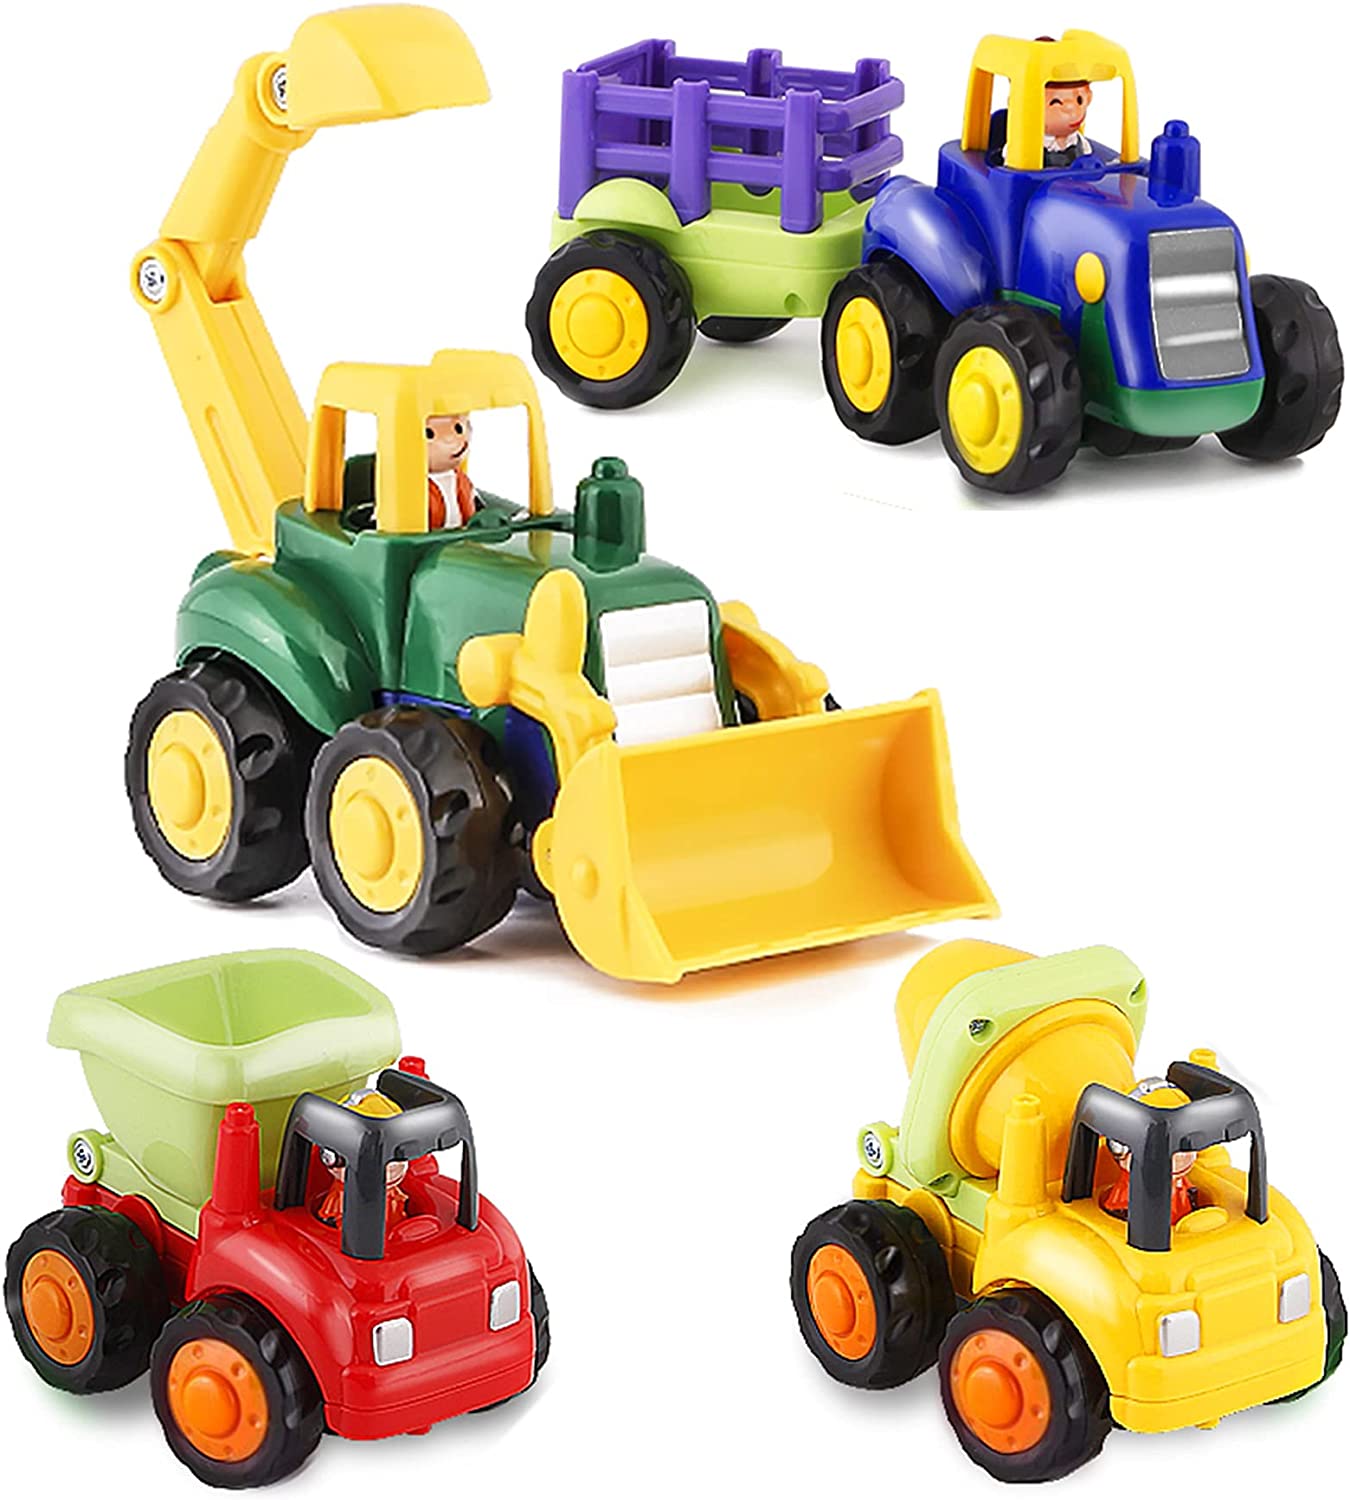 5 HISTOYE Toddler Toy Car Trucks ?v=1673625890